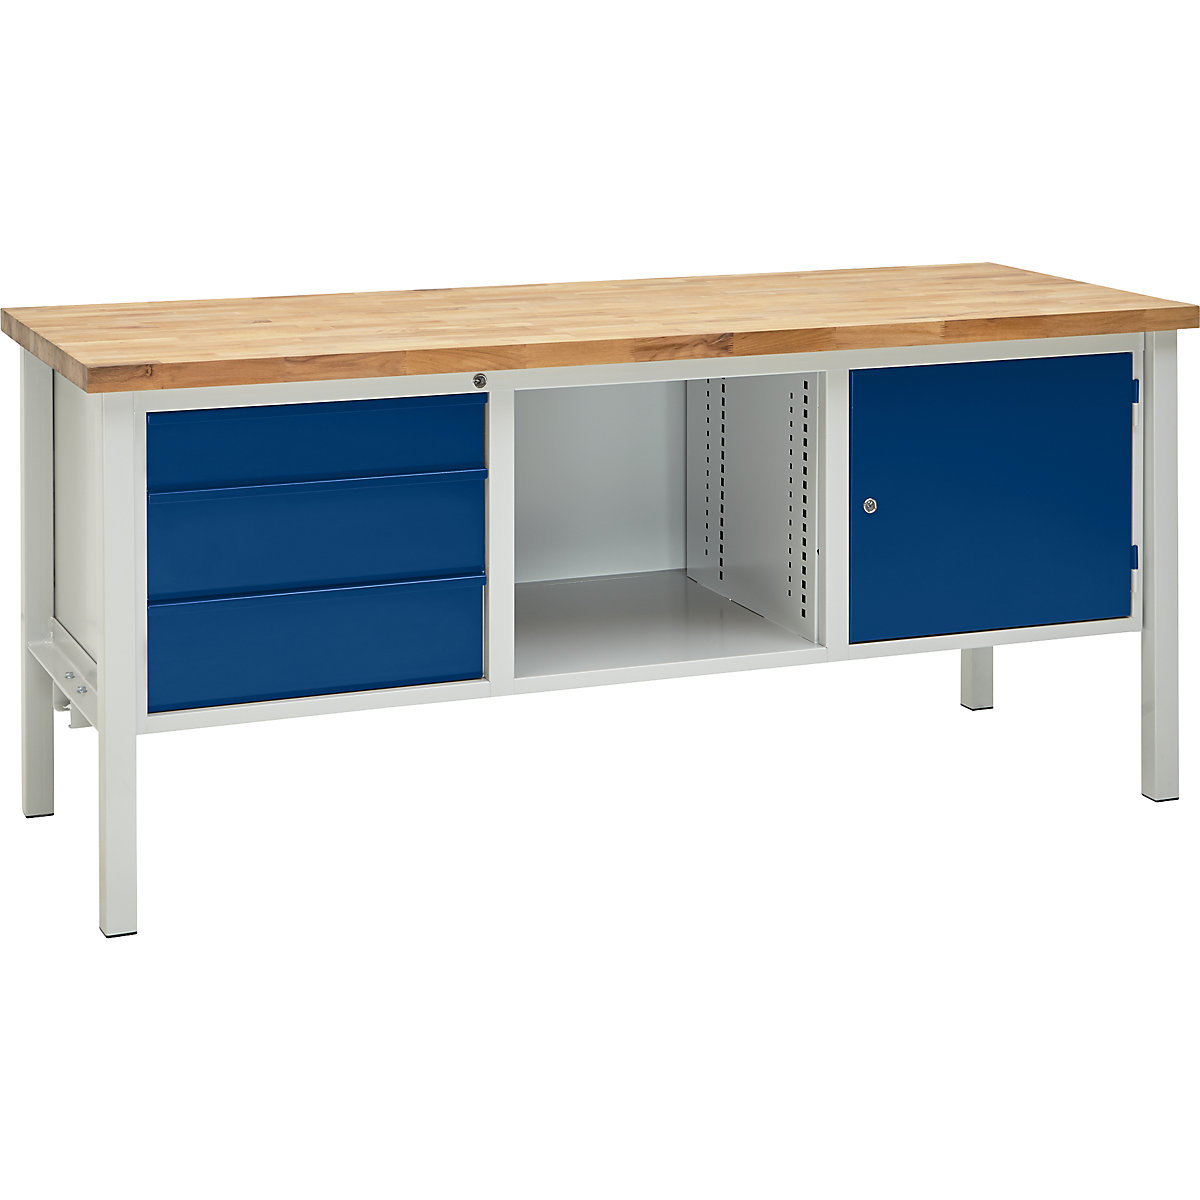 Dílenský stůl s rámovou konstrukcí, šířka 2000 mm, 3 zásuvky 1 x 125 / 2 x 175 mm, 1 dveře 475 mm, světlá šedá/enciánová modrá-6